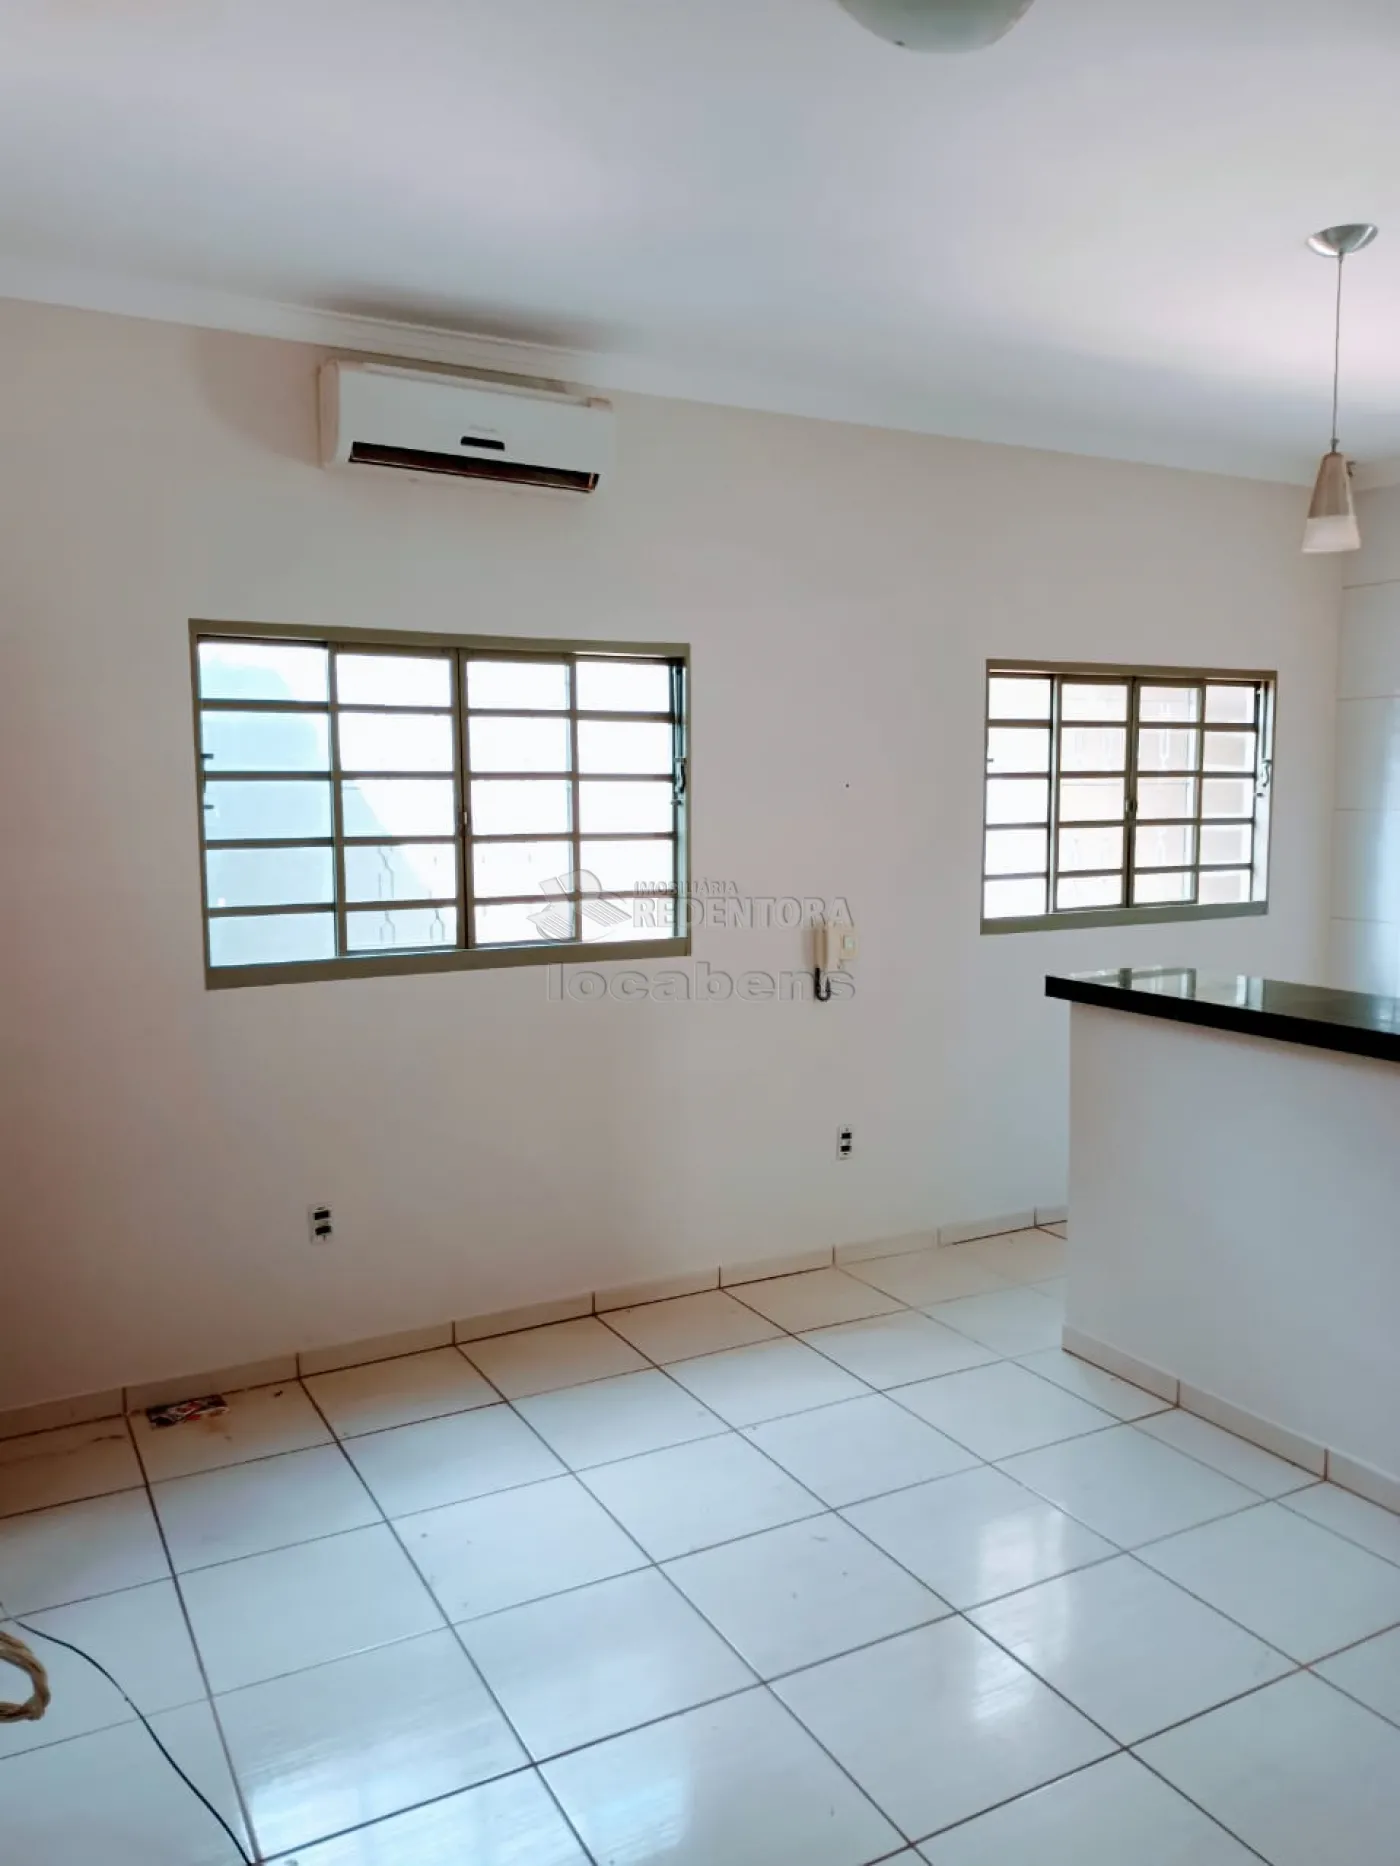 Comprar Casa / Padrão em São José do Rio Preto apenas R$ 315.000,00 - Foto 11